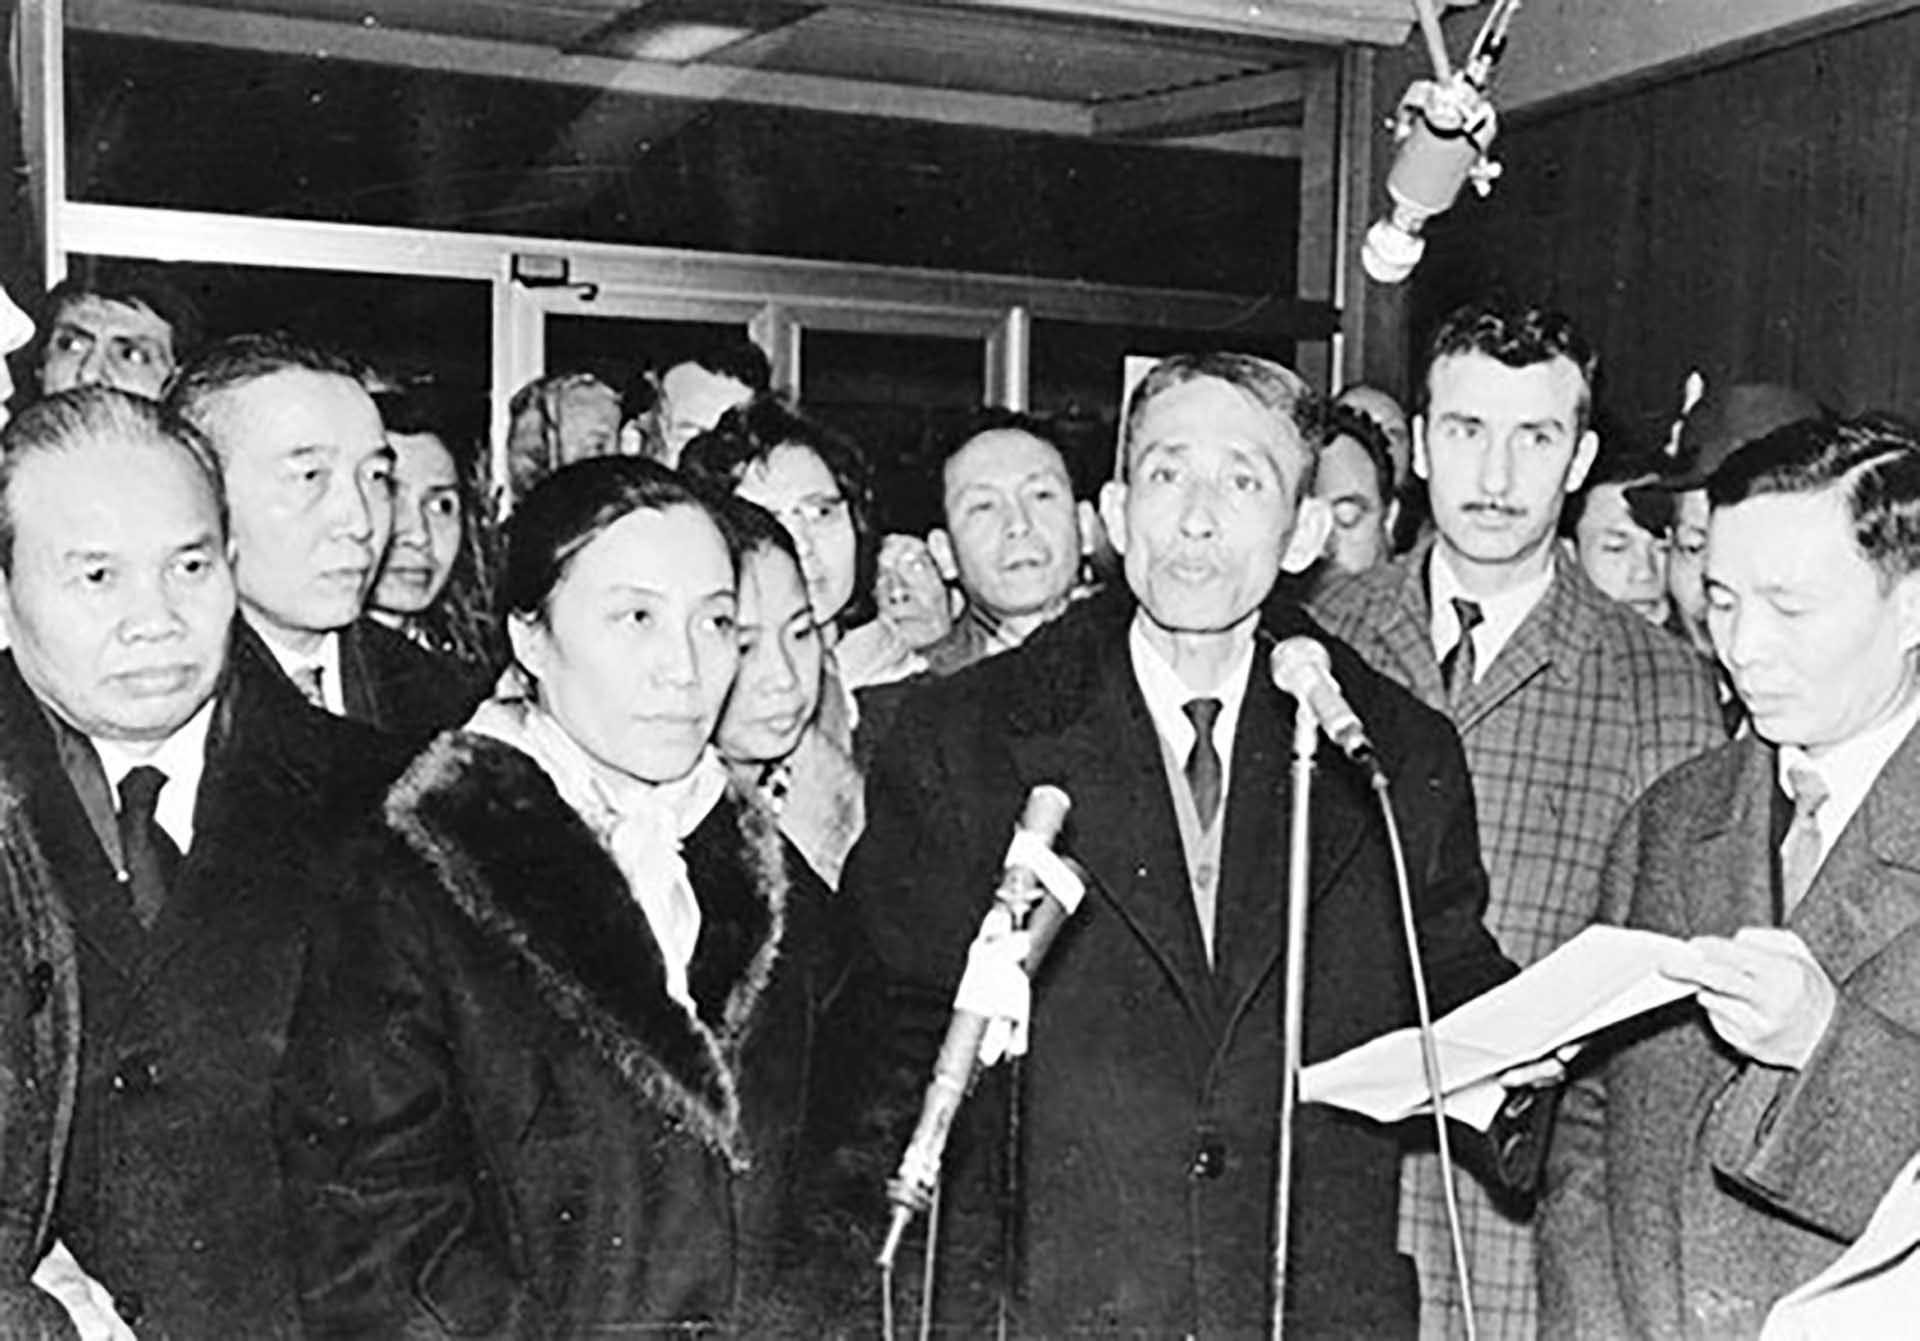 Trưởng đoàn  Mặt trận Dân tộc Giải phóng miền Nam Việt Nam Trần Bửu Kiếm đọc bản tuyên bố nêu rõ lập trường của Mặt trận Dân tộc Giải phóng miền Nam Việt Nam về việc giải quyết vấn đề Việt Nam tại hội nghị 4 bên ở Paris, năm 1969.